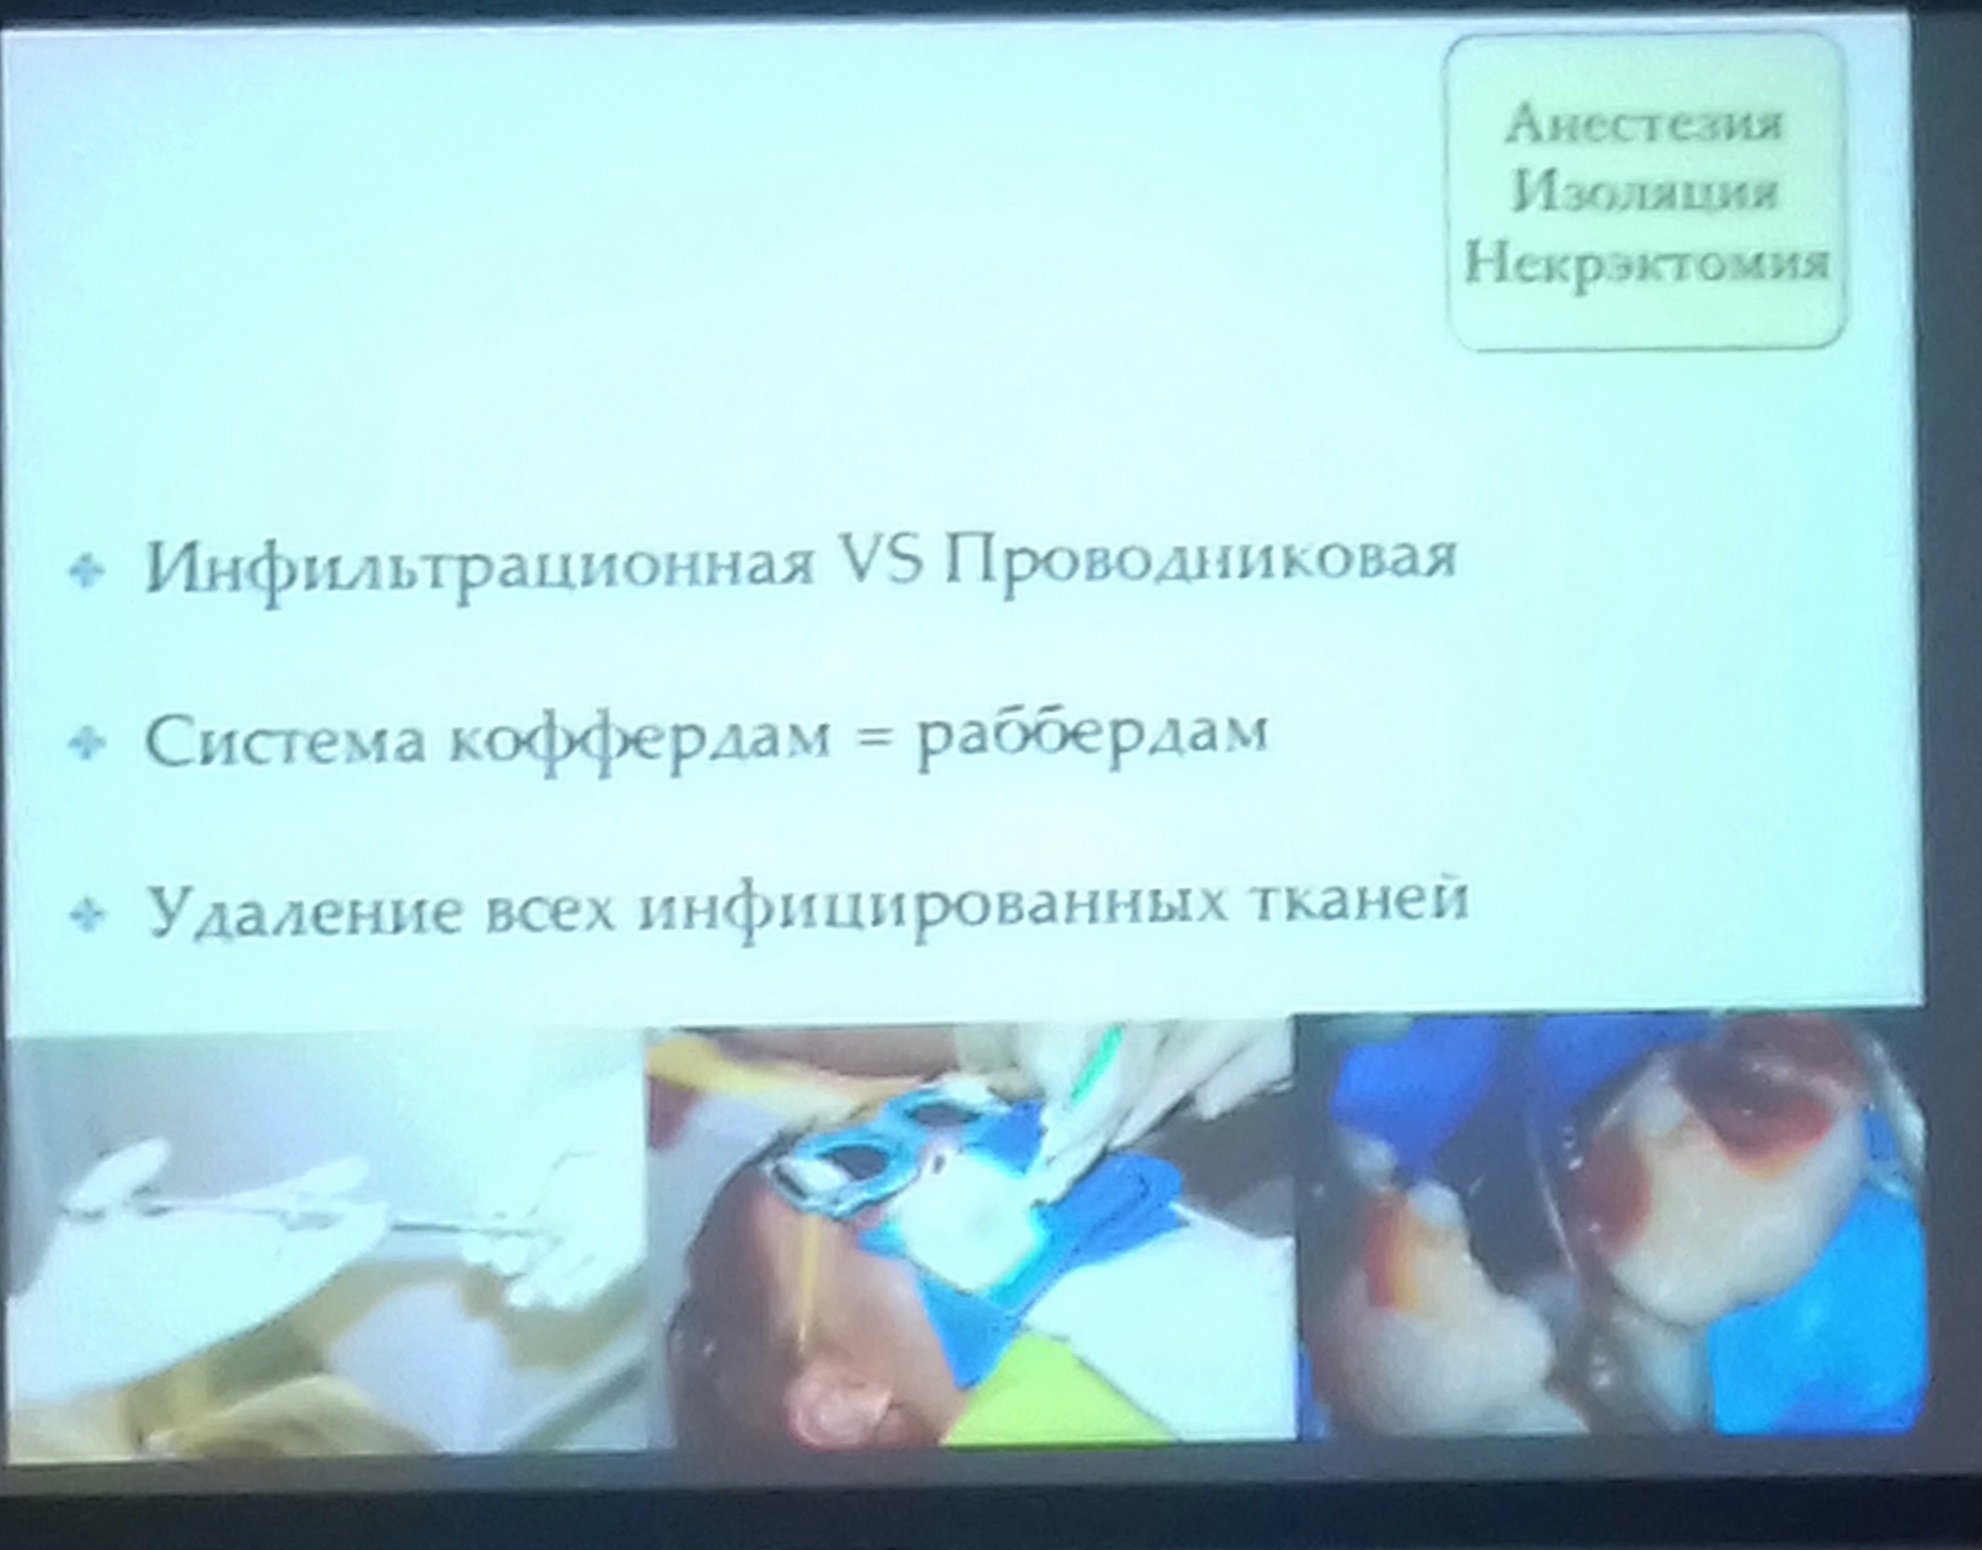 Семинар Антонины Гецман в Новосибирске «Лечение пульпитов и периодонтитов в детской стоматологии»